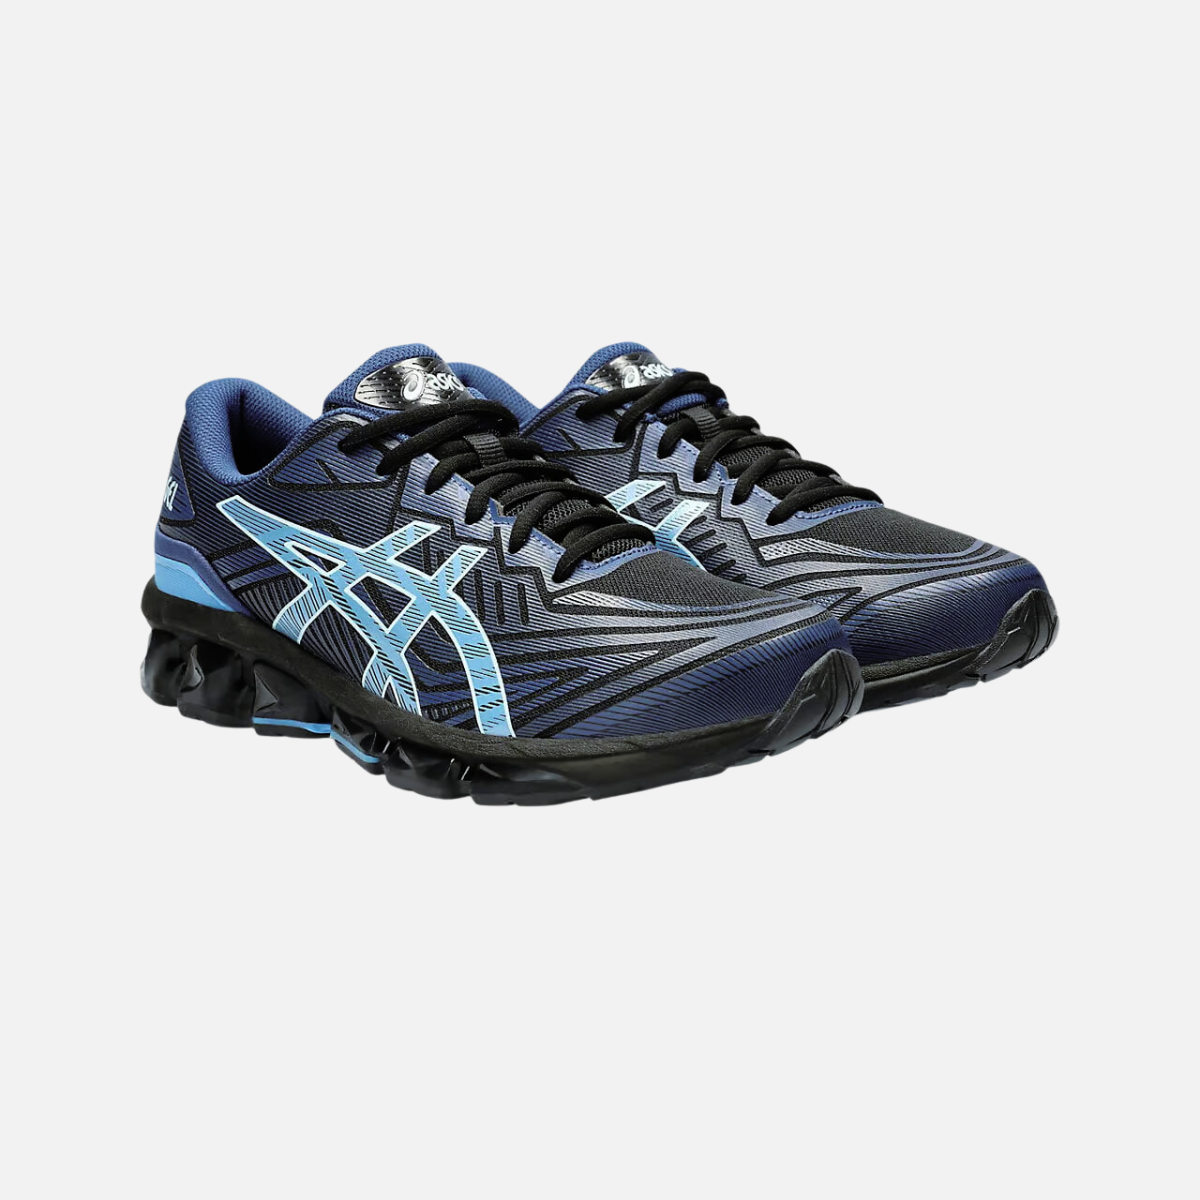 Asics GEL-QUANTUM 360 VII Men's Running Shoes- BLACK/MIDNIGHT BLUE